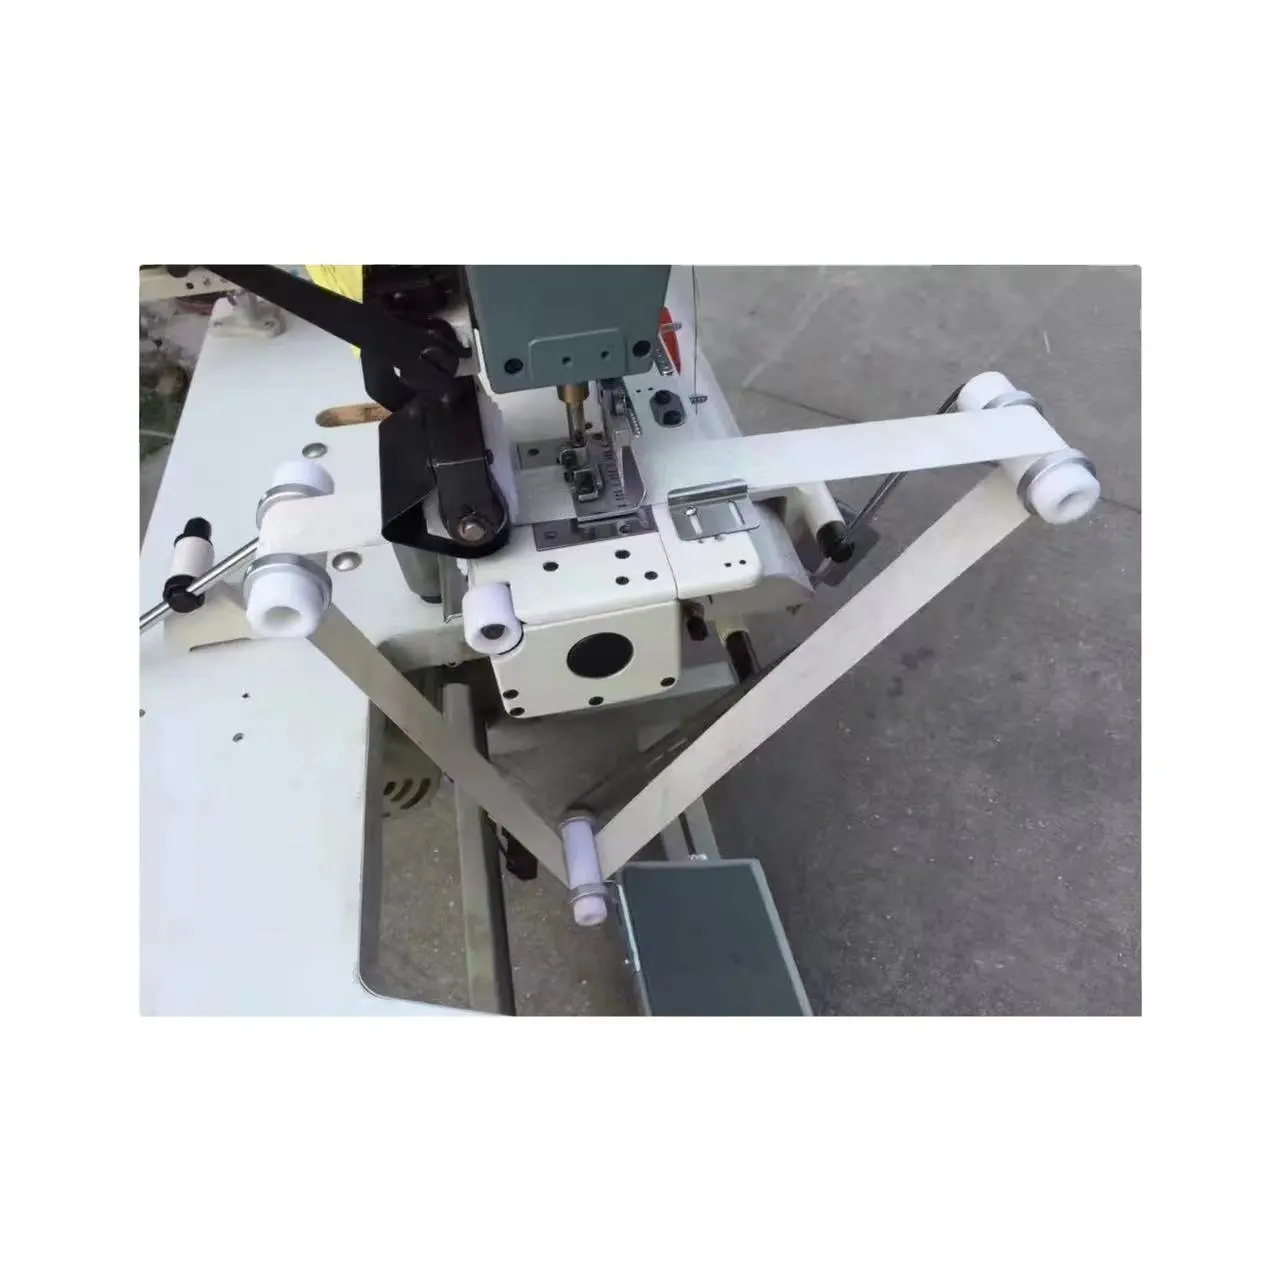 RONMACK macchina per cucire dispositivo di estensione collare RM-311